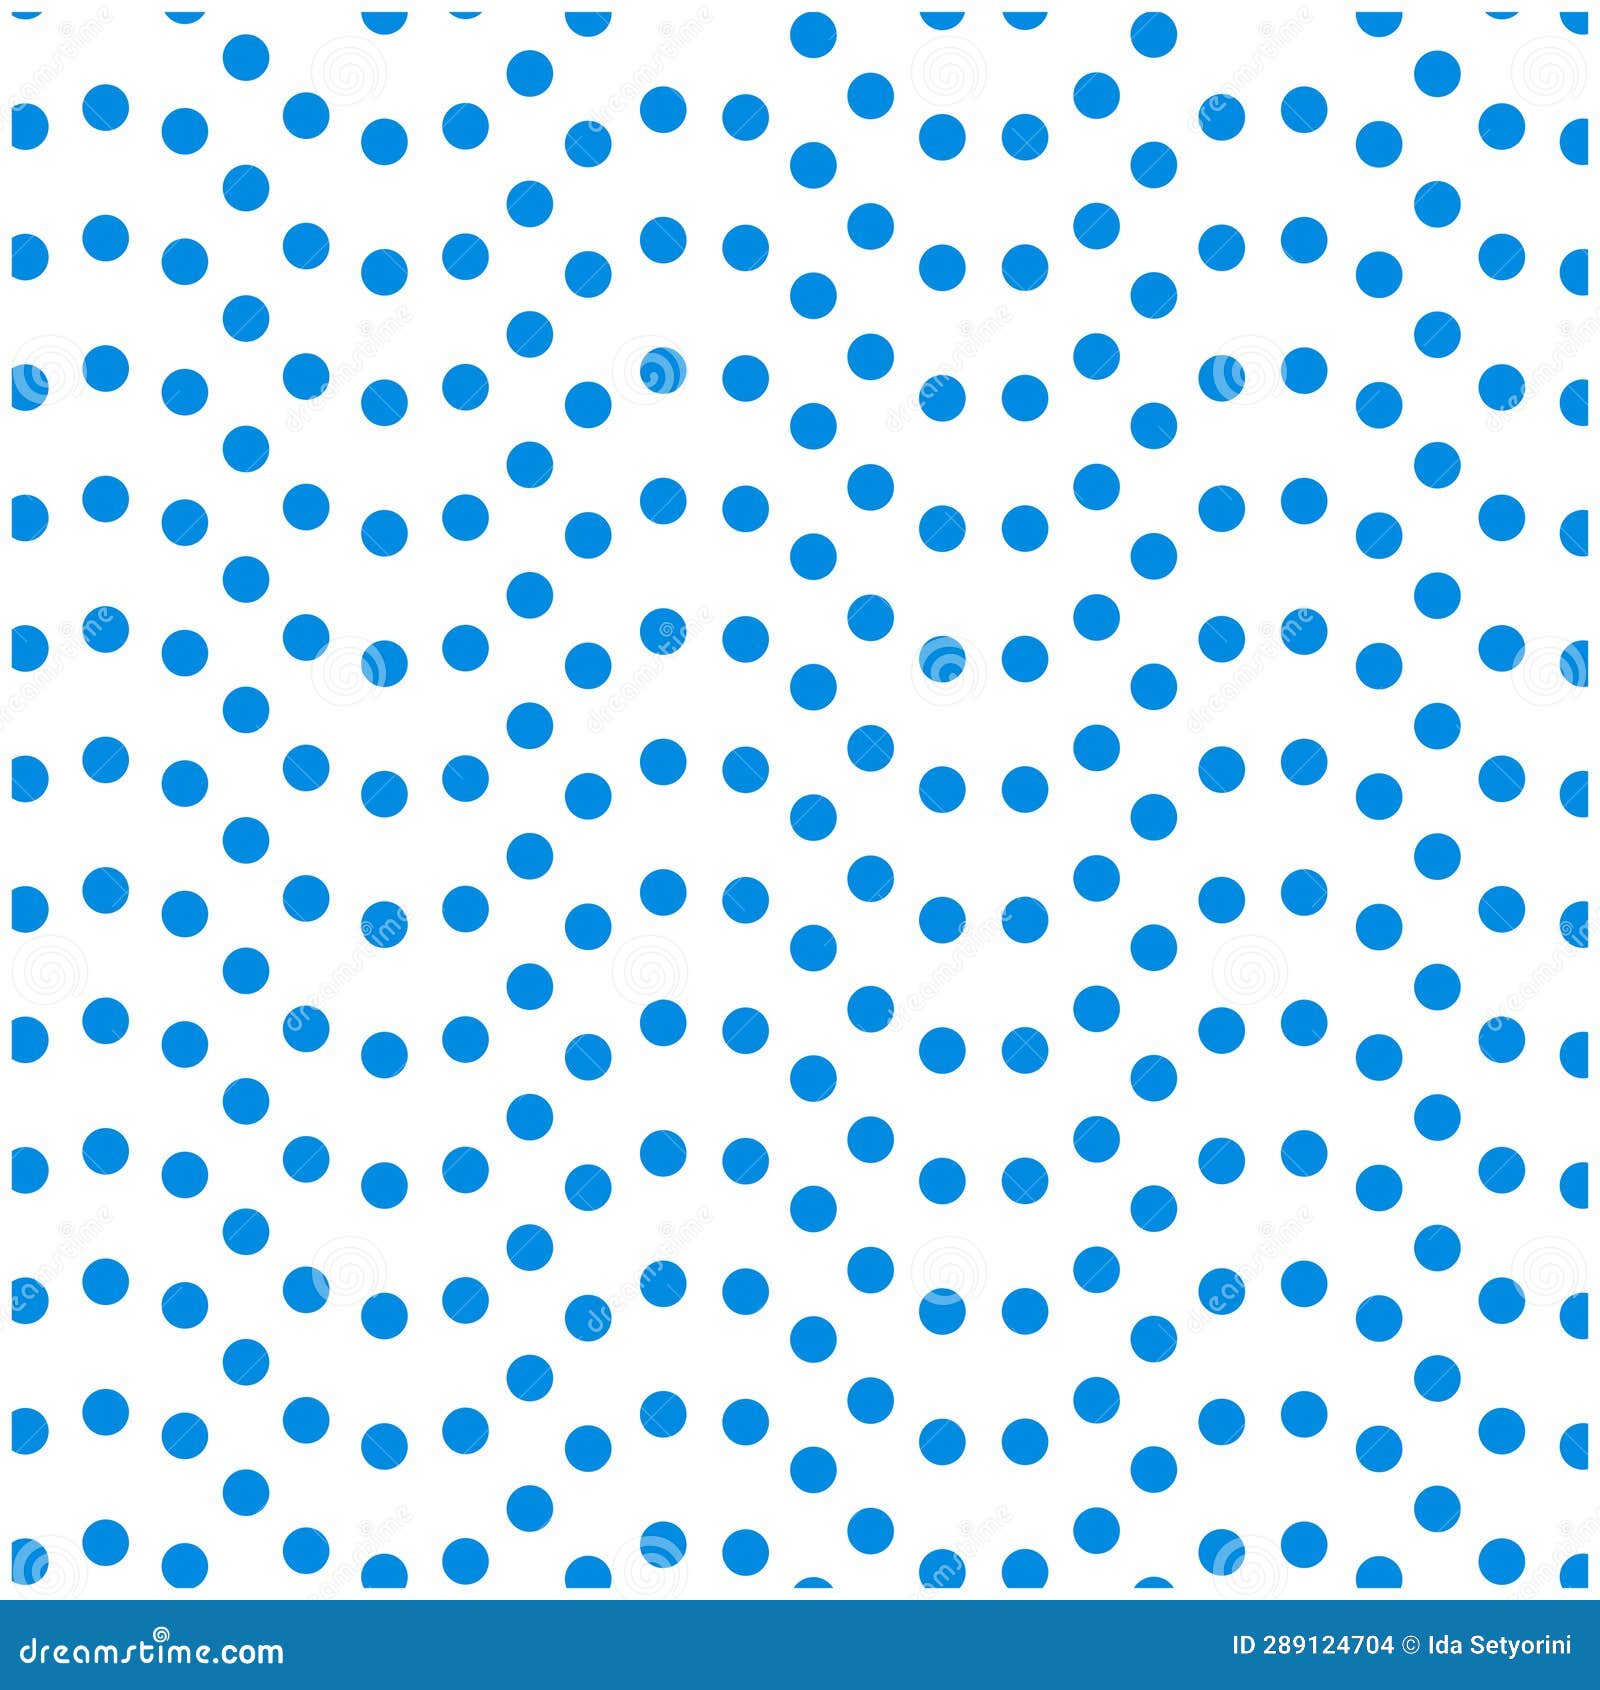 Polka Dot Background Vector Stock Illustration - Illustration of modern ...